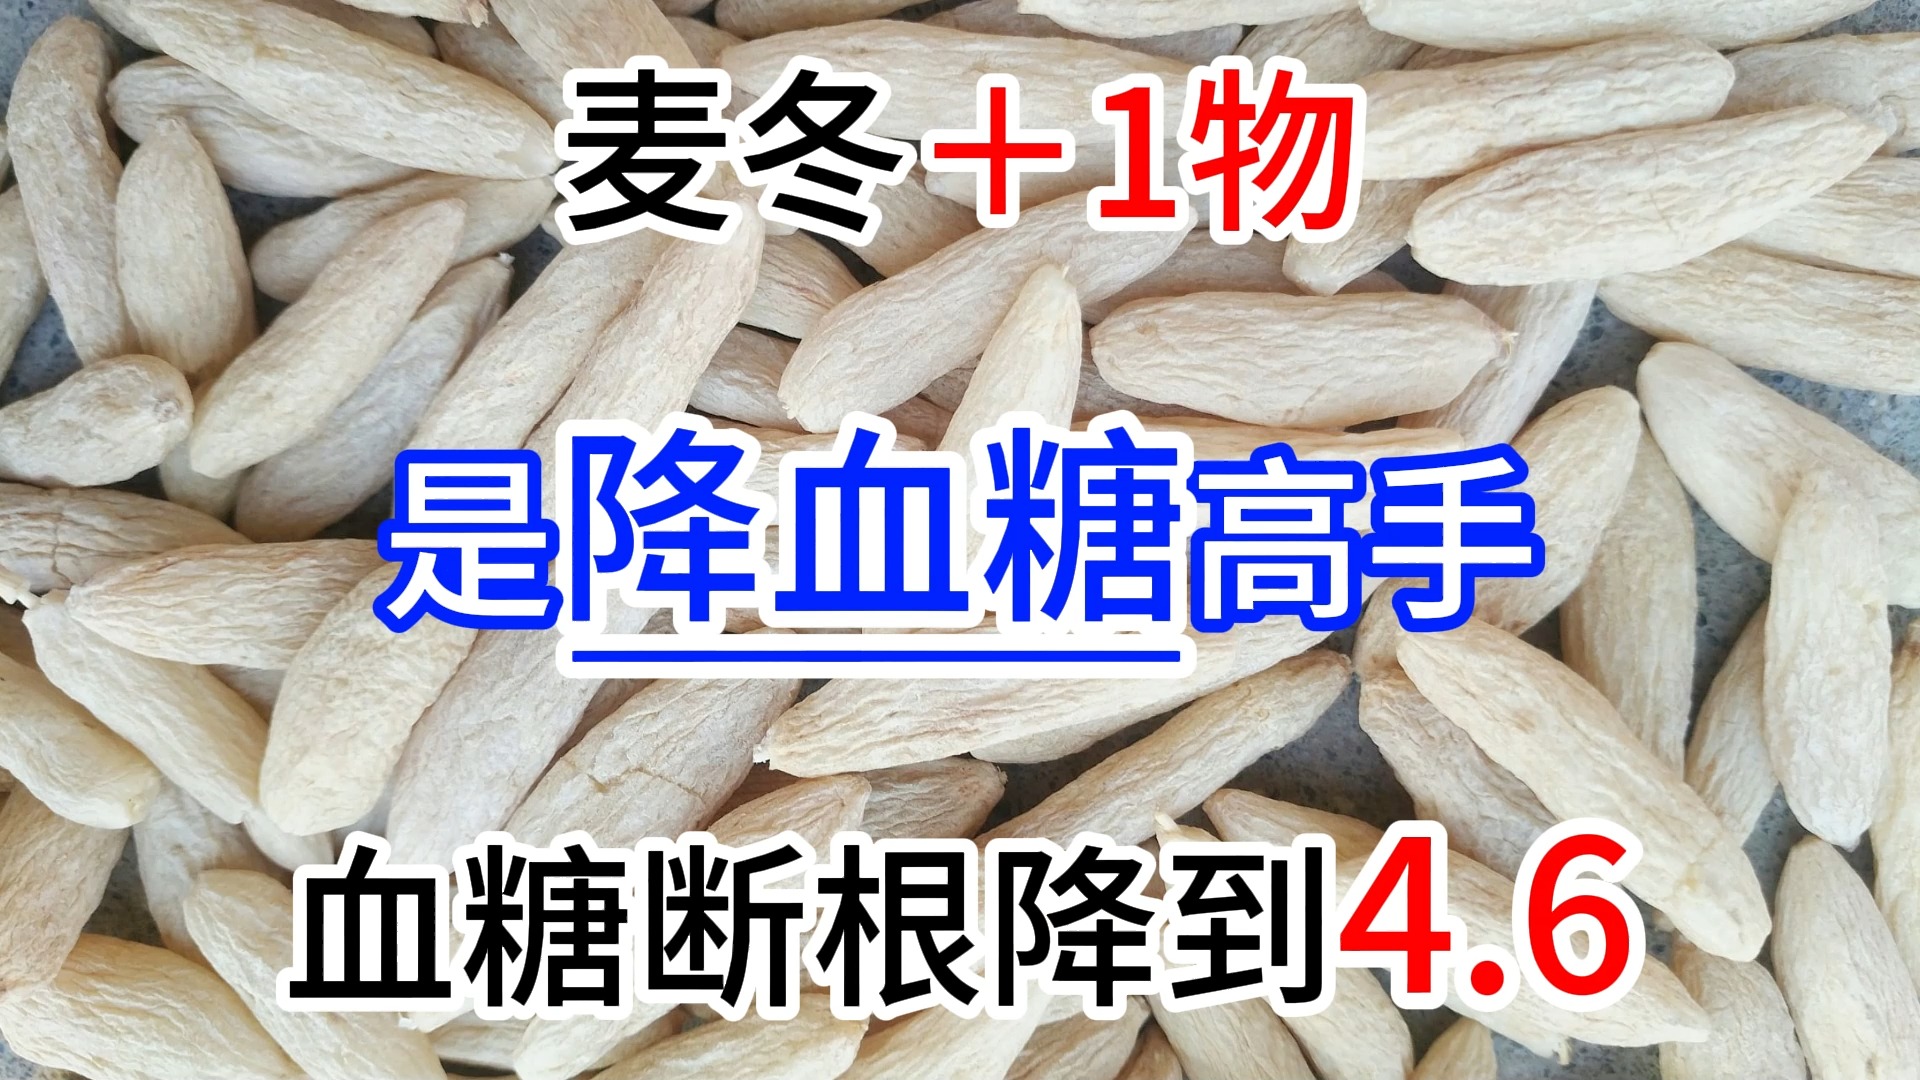 麦冬＋1物，是降血糖高手，血糖断根降到4.6